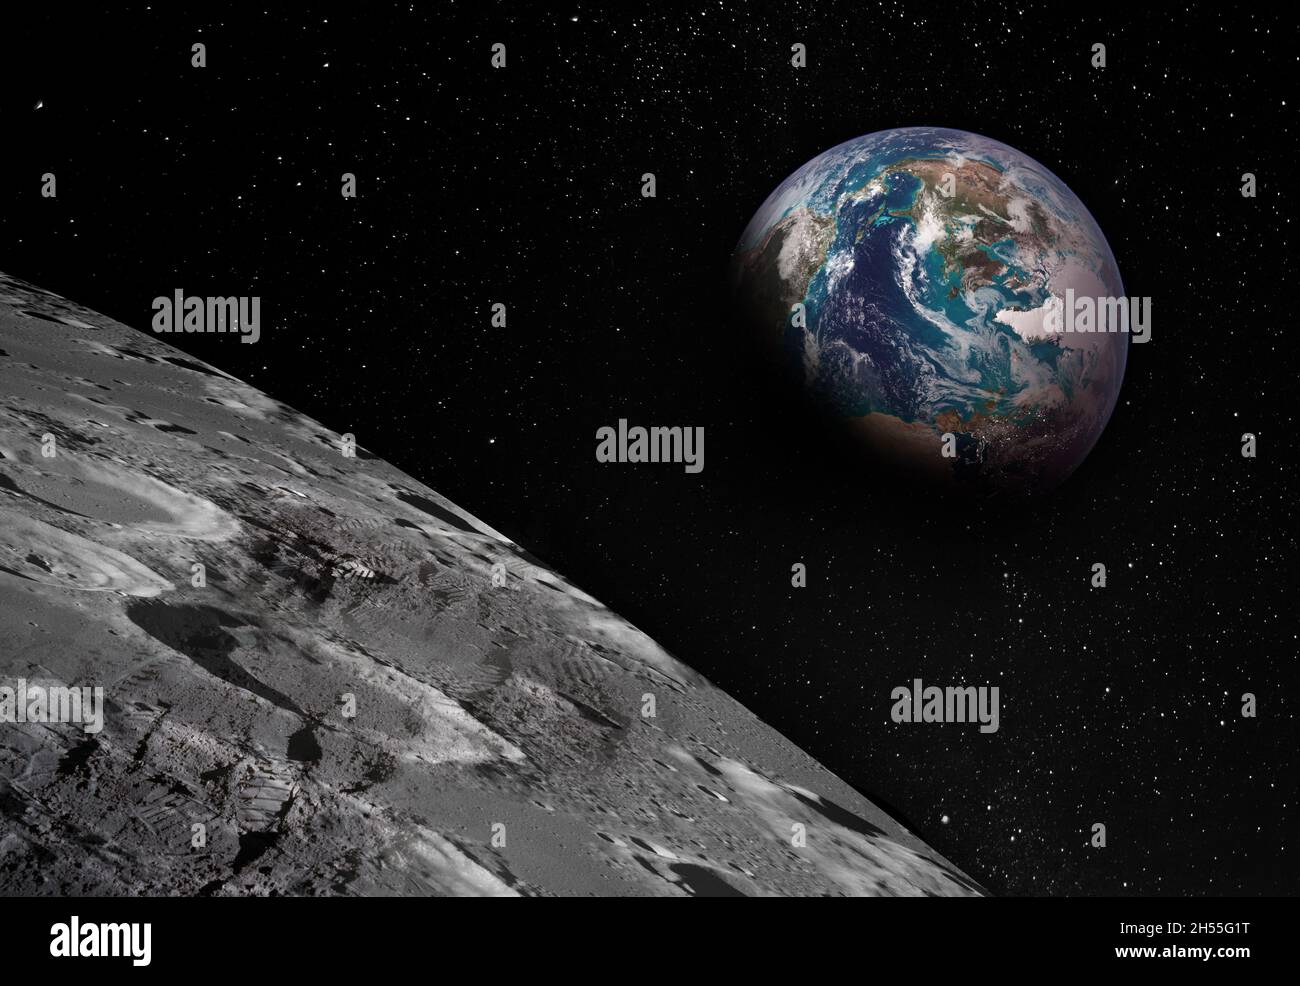 Vue du membre de la Lune avec la Terre qui s'élève à l'horizon.Empreintes de pas comme preuve de personnes étant là ou grande falsification.Collage.Éléments de cette image Banque D'Images